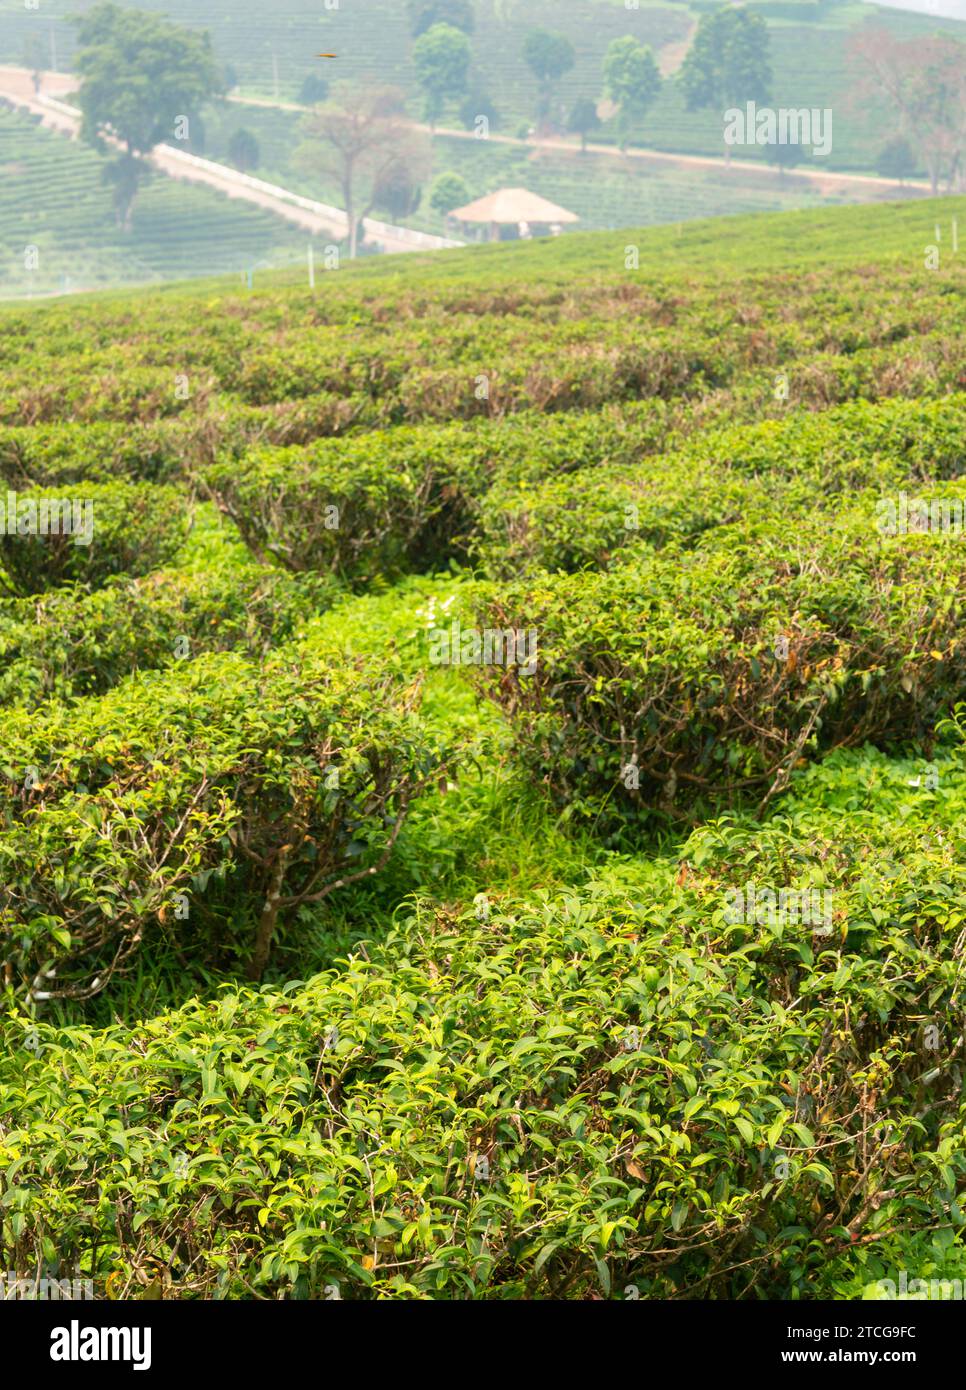 Centinaia di file di piante salutari, verdi, biologiche lussureggianti thailandesi, ed edifici oltre, in una delle più grandi e raffinate aree di produzione di tè della Thailandia. Un h Foto Stock